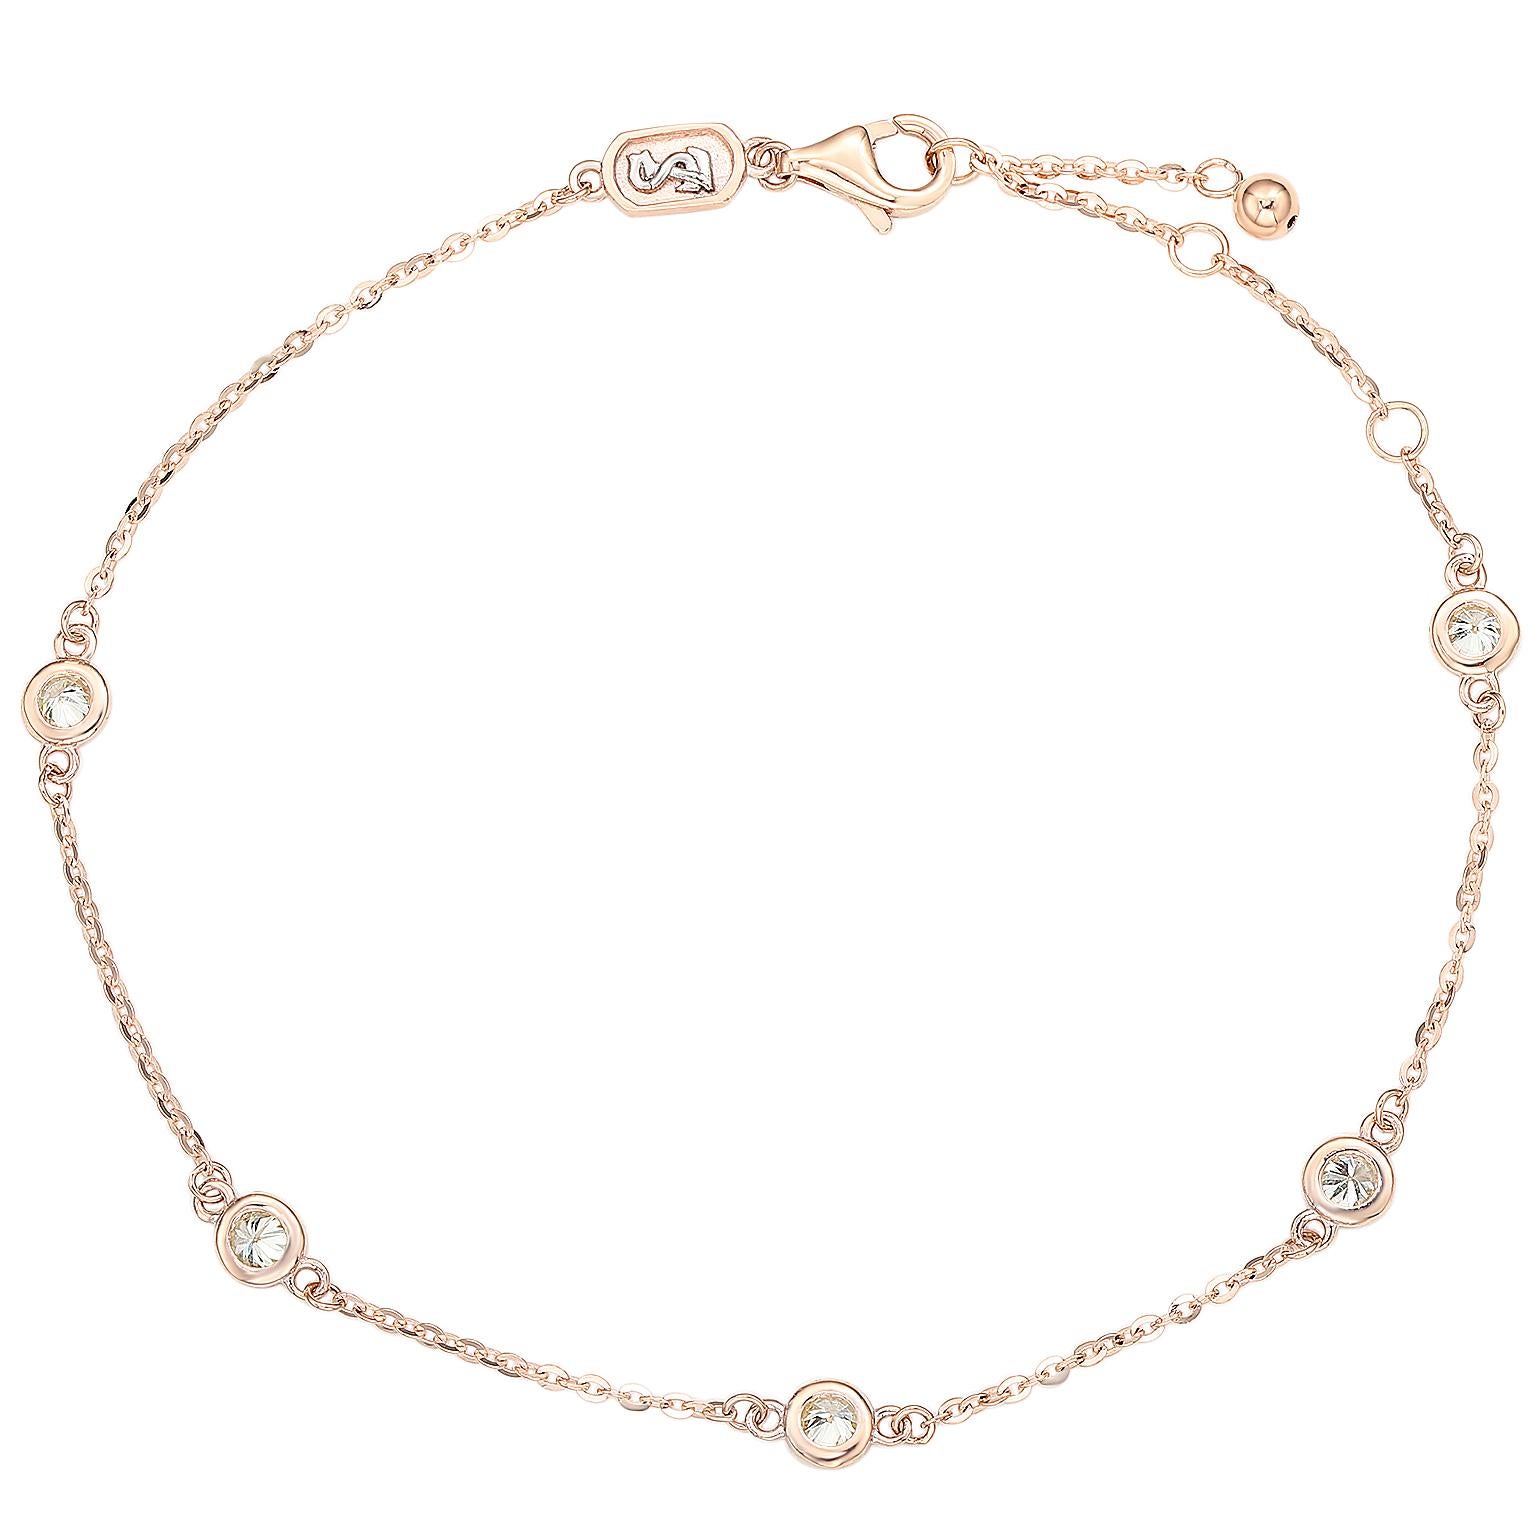 Ajoutez de l'éclat à votre poignet avec ce magnifique bracelet à station de diamants de Suzy Levian. Ce magnifique bracelet arbore 5 diamants brillants de taille ronde dans une lunette exquise ornée d'or rose 14 carats. Ce bracelet présente une